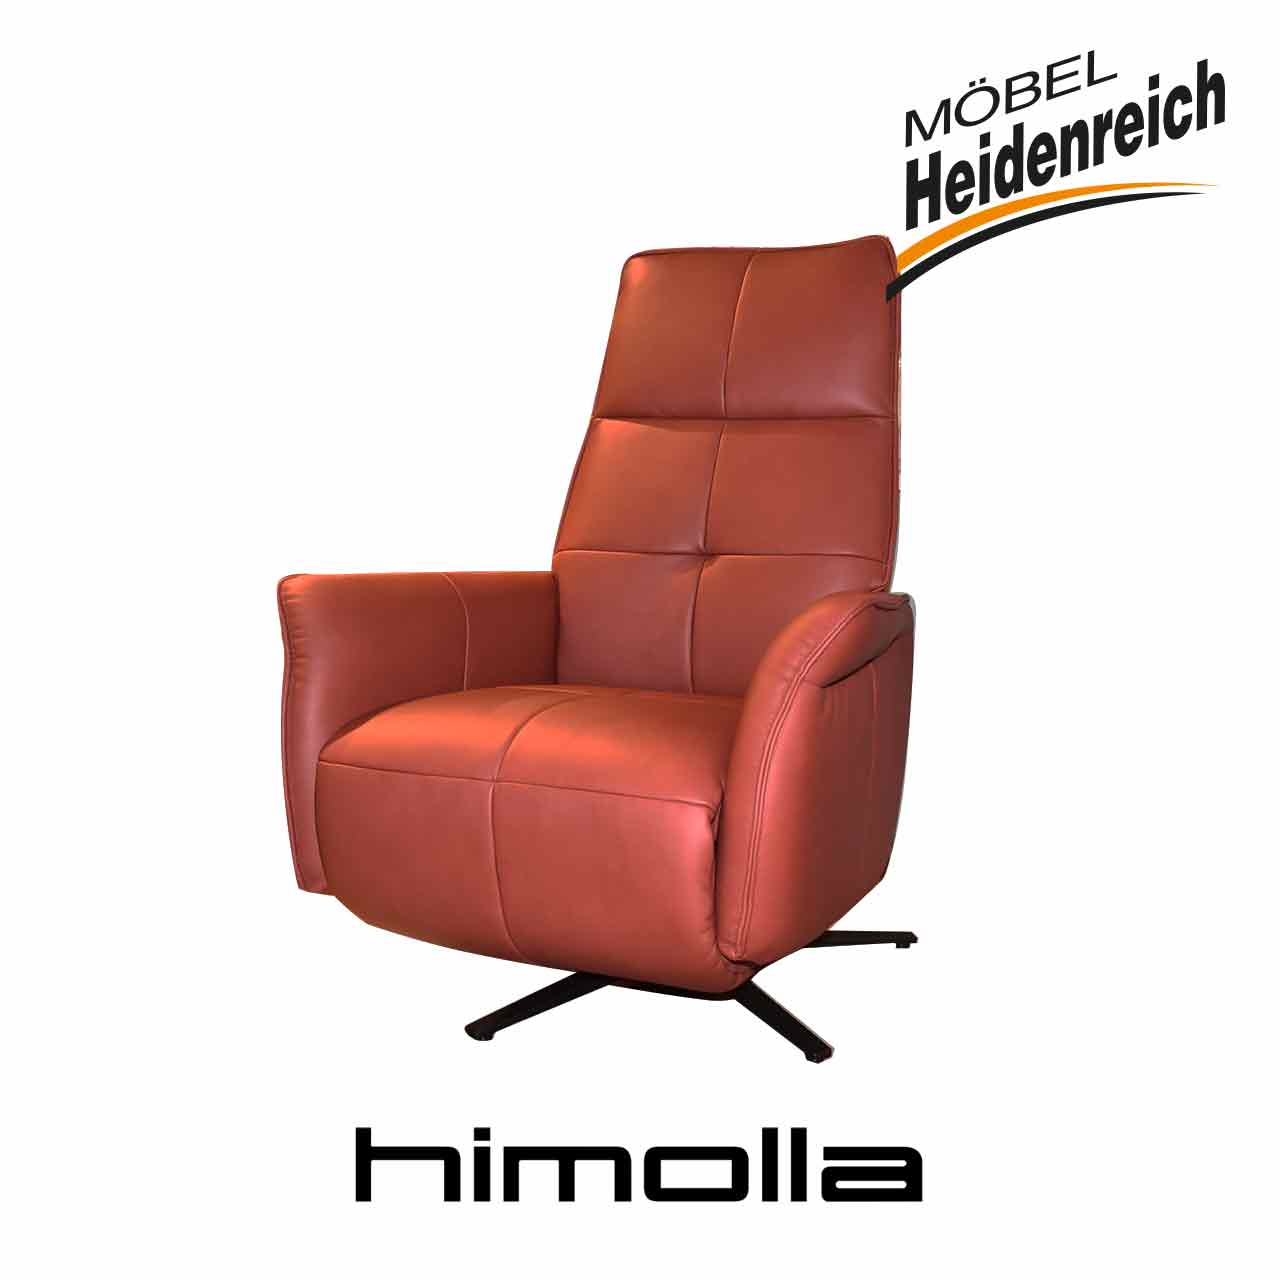 Himolla Relaxsessel 9361-56V | Heidenreich Möbel